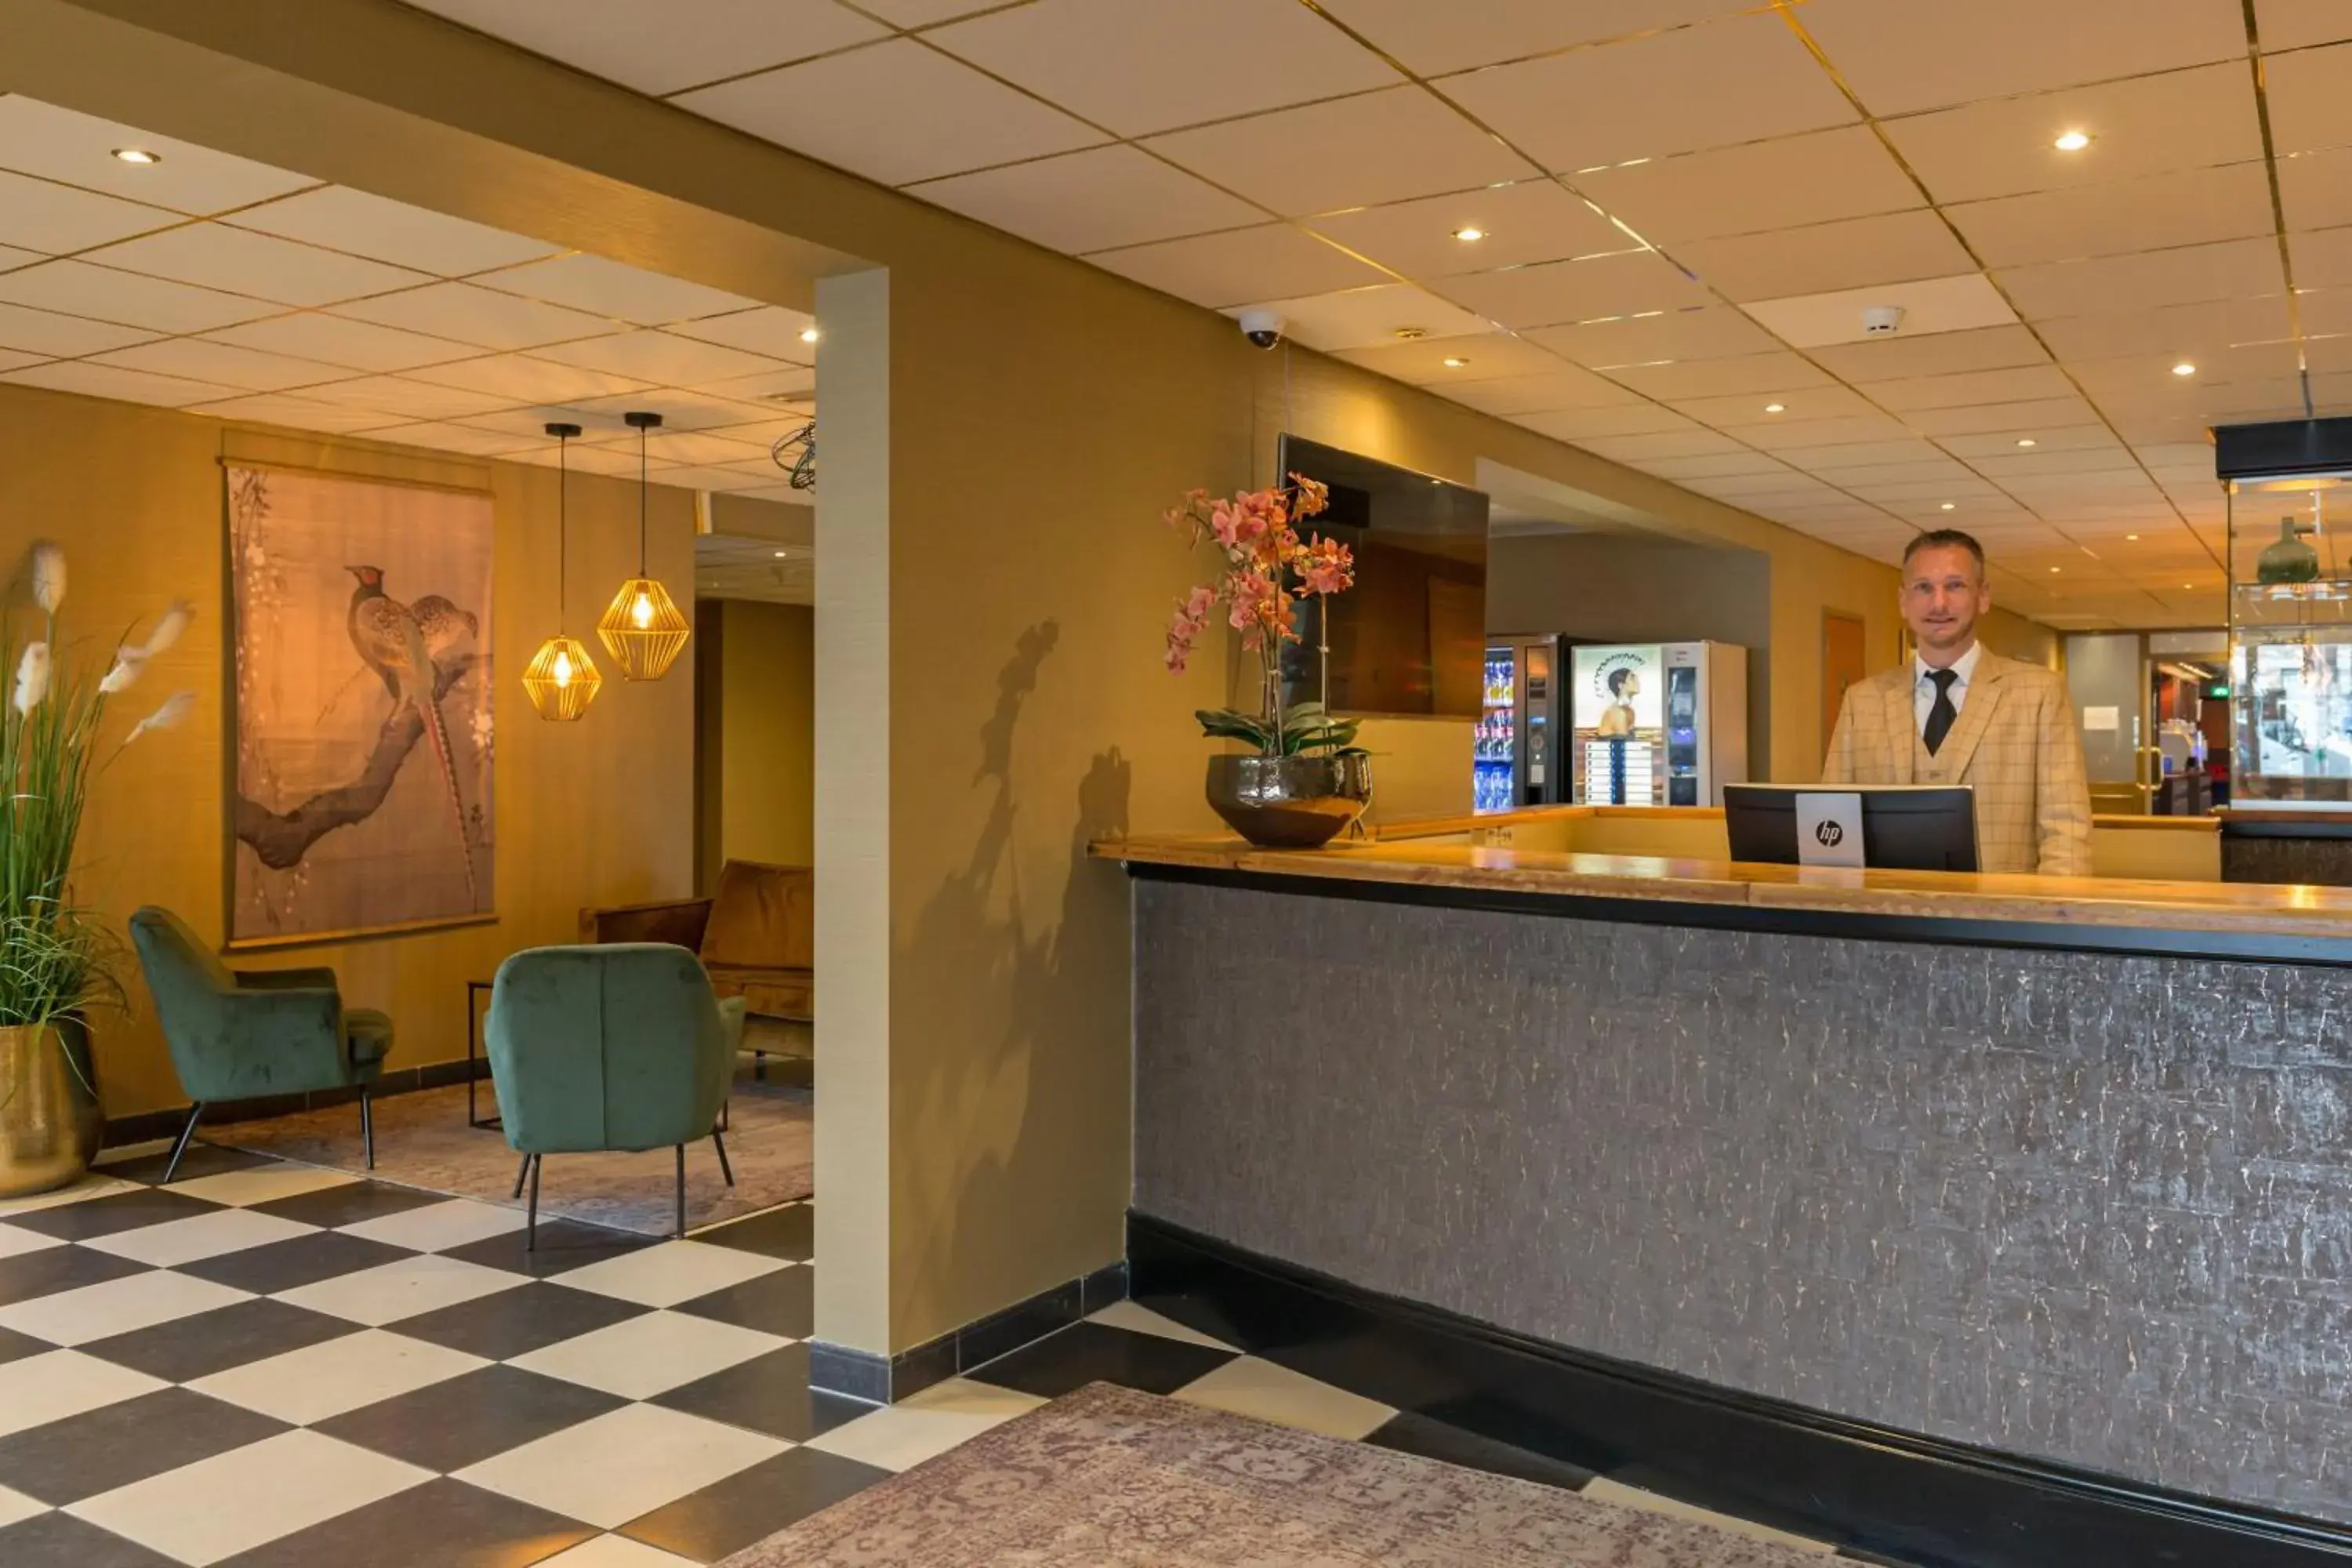 Lobby or reception, Lobby/Reception in New West Inn Amsterdam